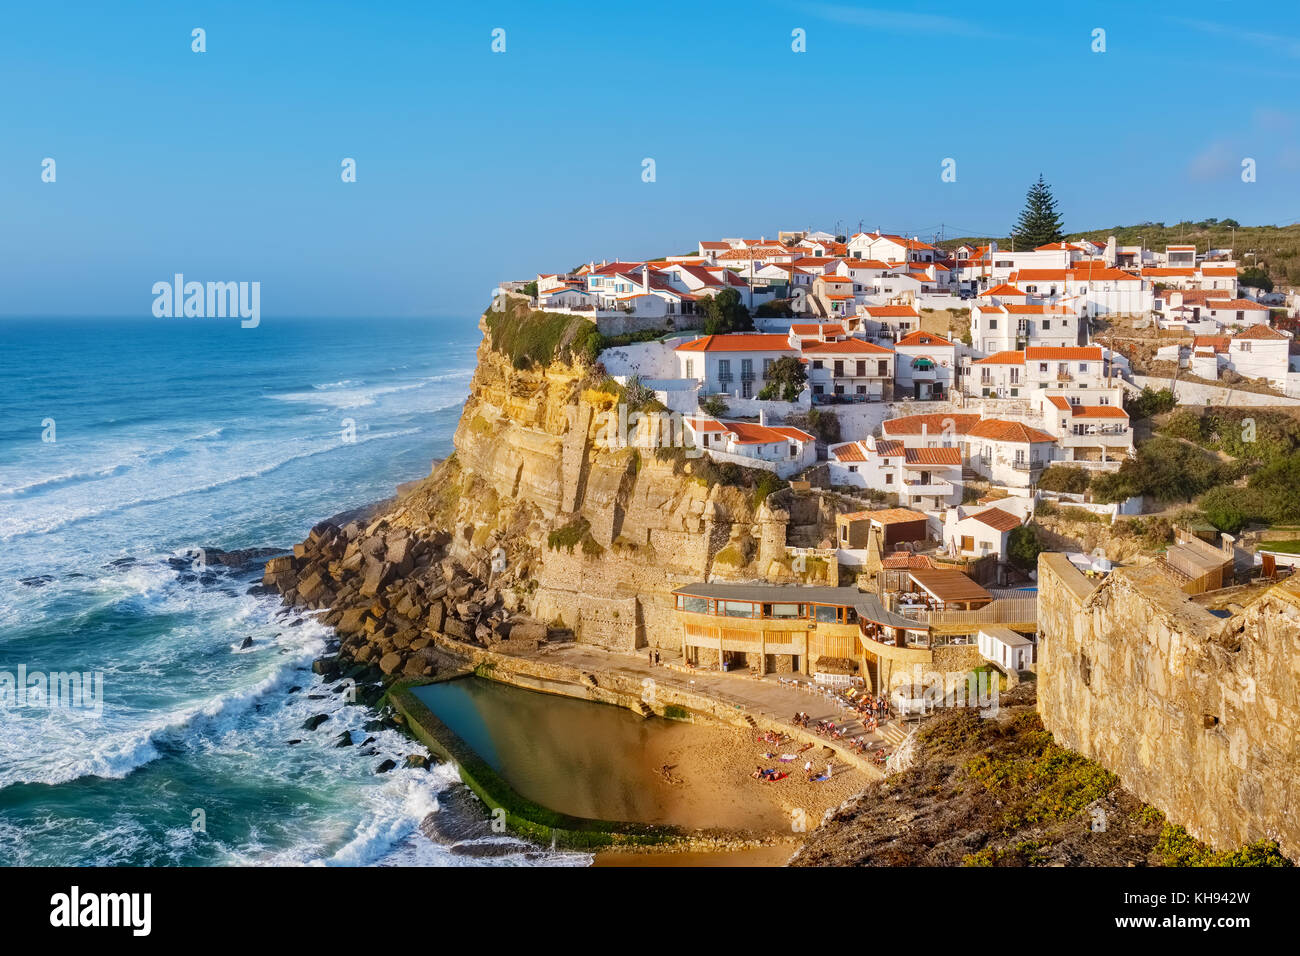 Vista de ciudad costera Azenhas do Mar. Municipio de Sintra, Portugal Foto de stock